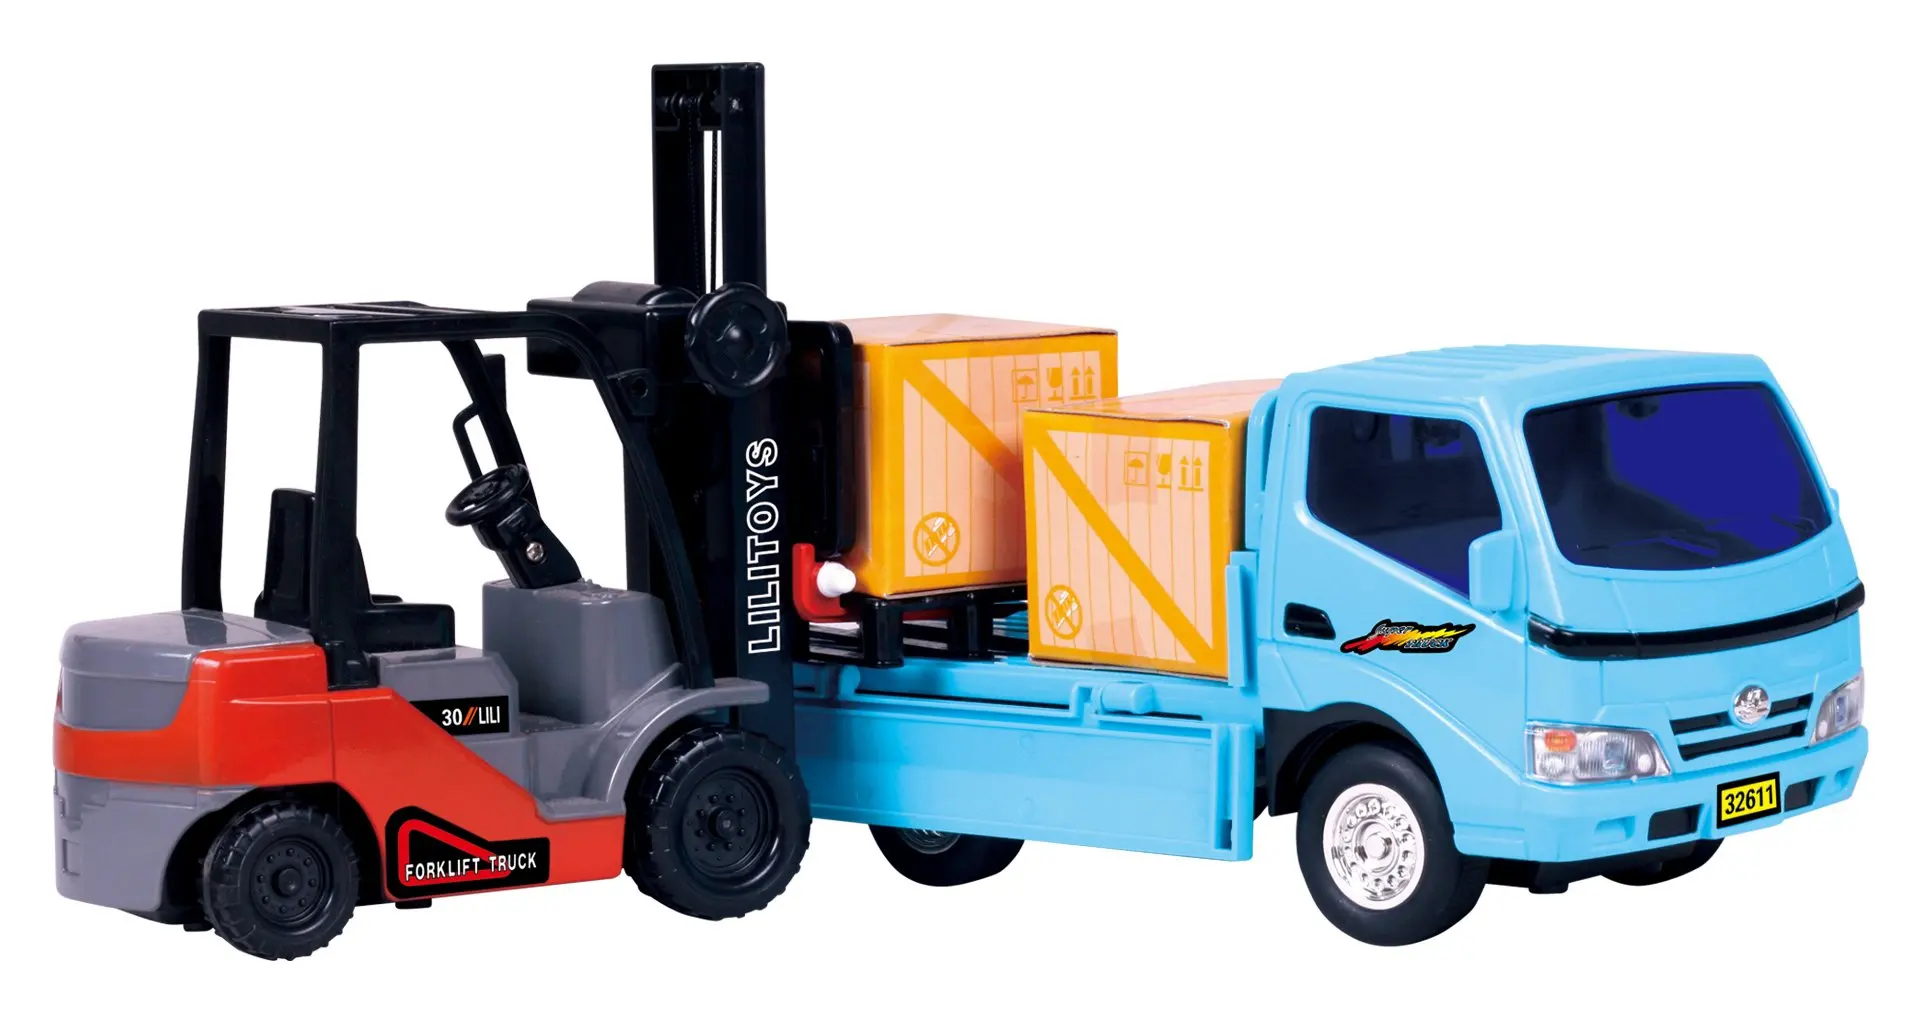 Cheap Linde Forklift Truck Find Linde Forklift Truck Deals On Line At Alibaba Com